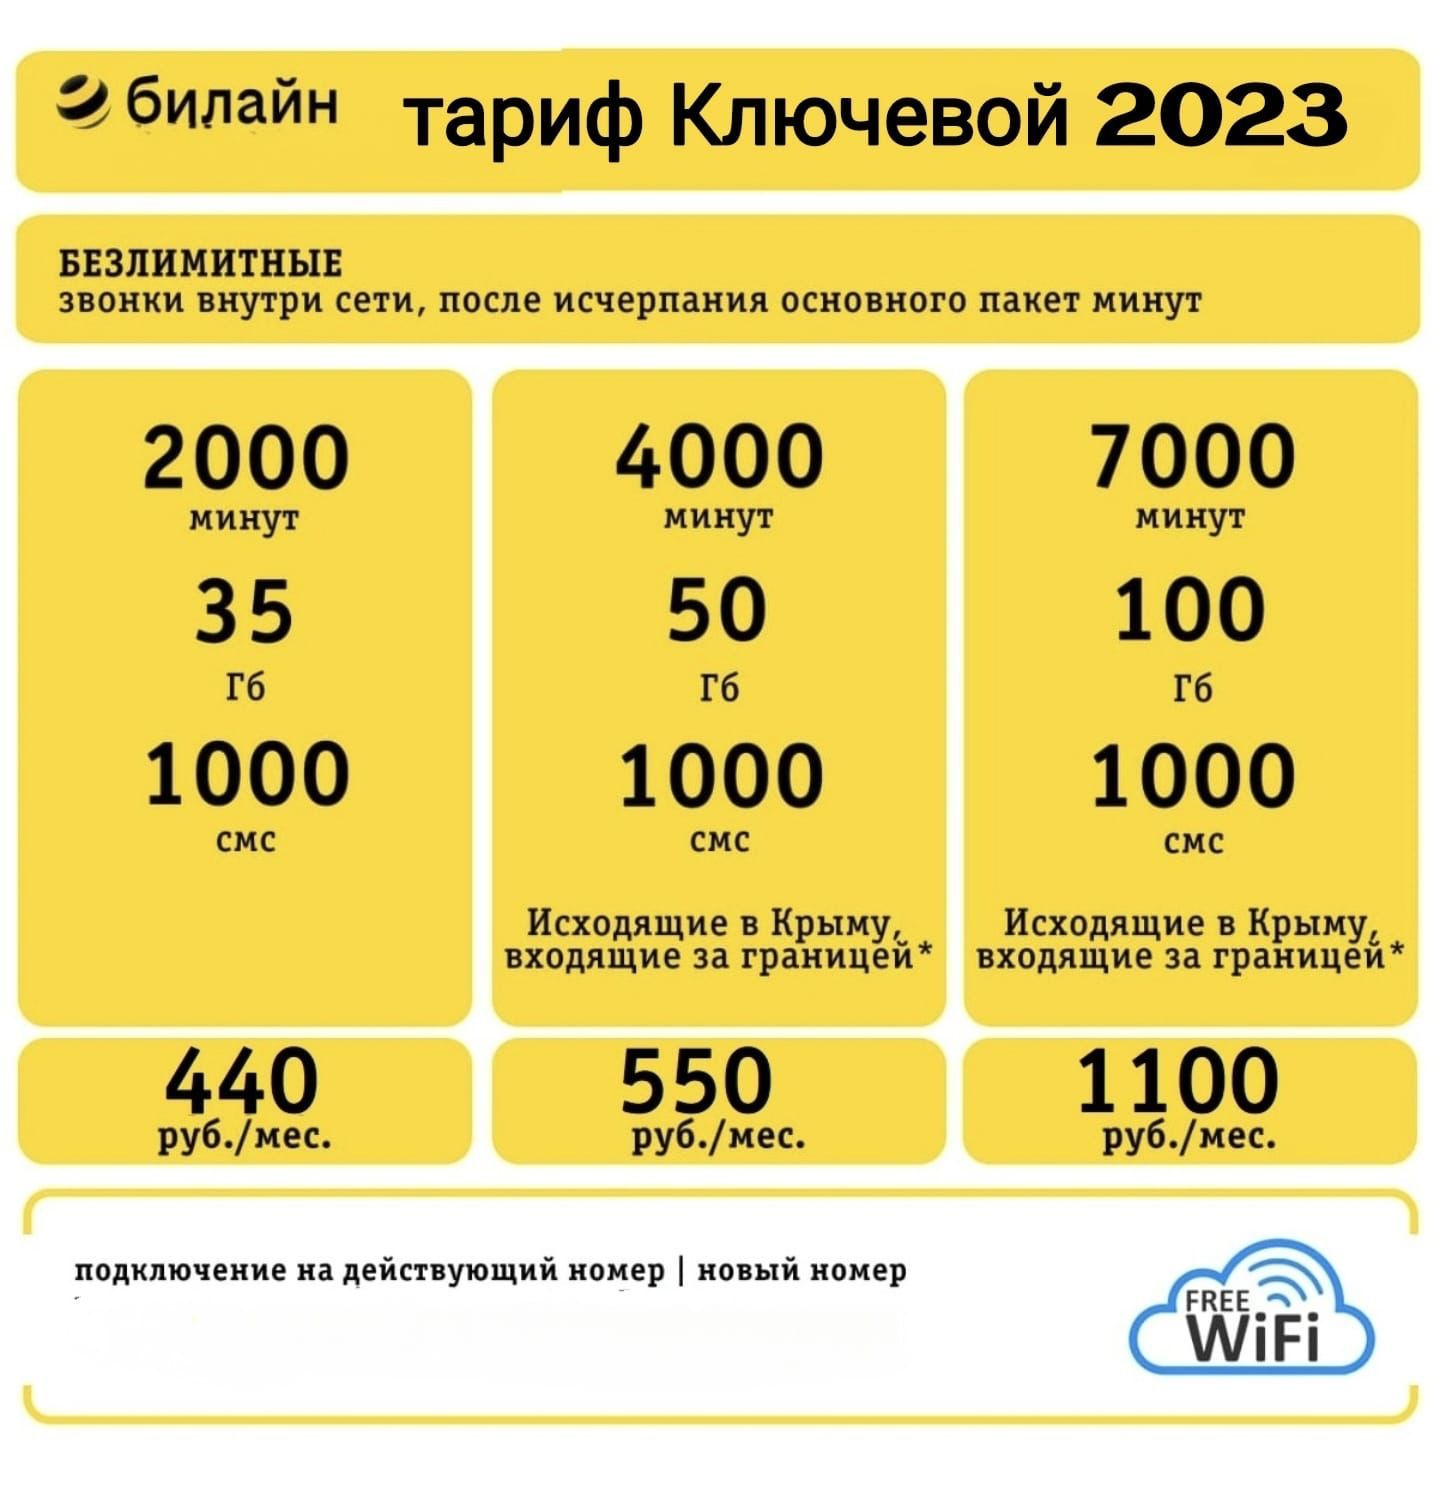 Выгодные тарифы для телефонов и смартфонов от Билайн - ключ ключевой 2023 - в интернет-магазине ✯ 4g-inter.net ✯